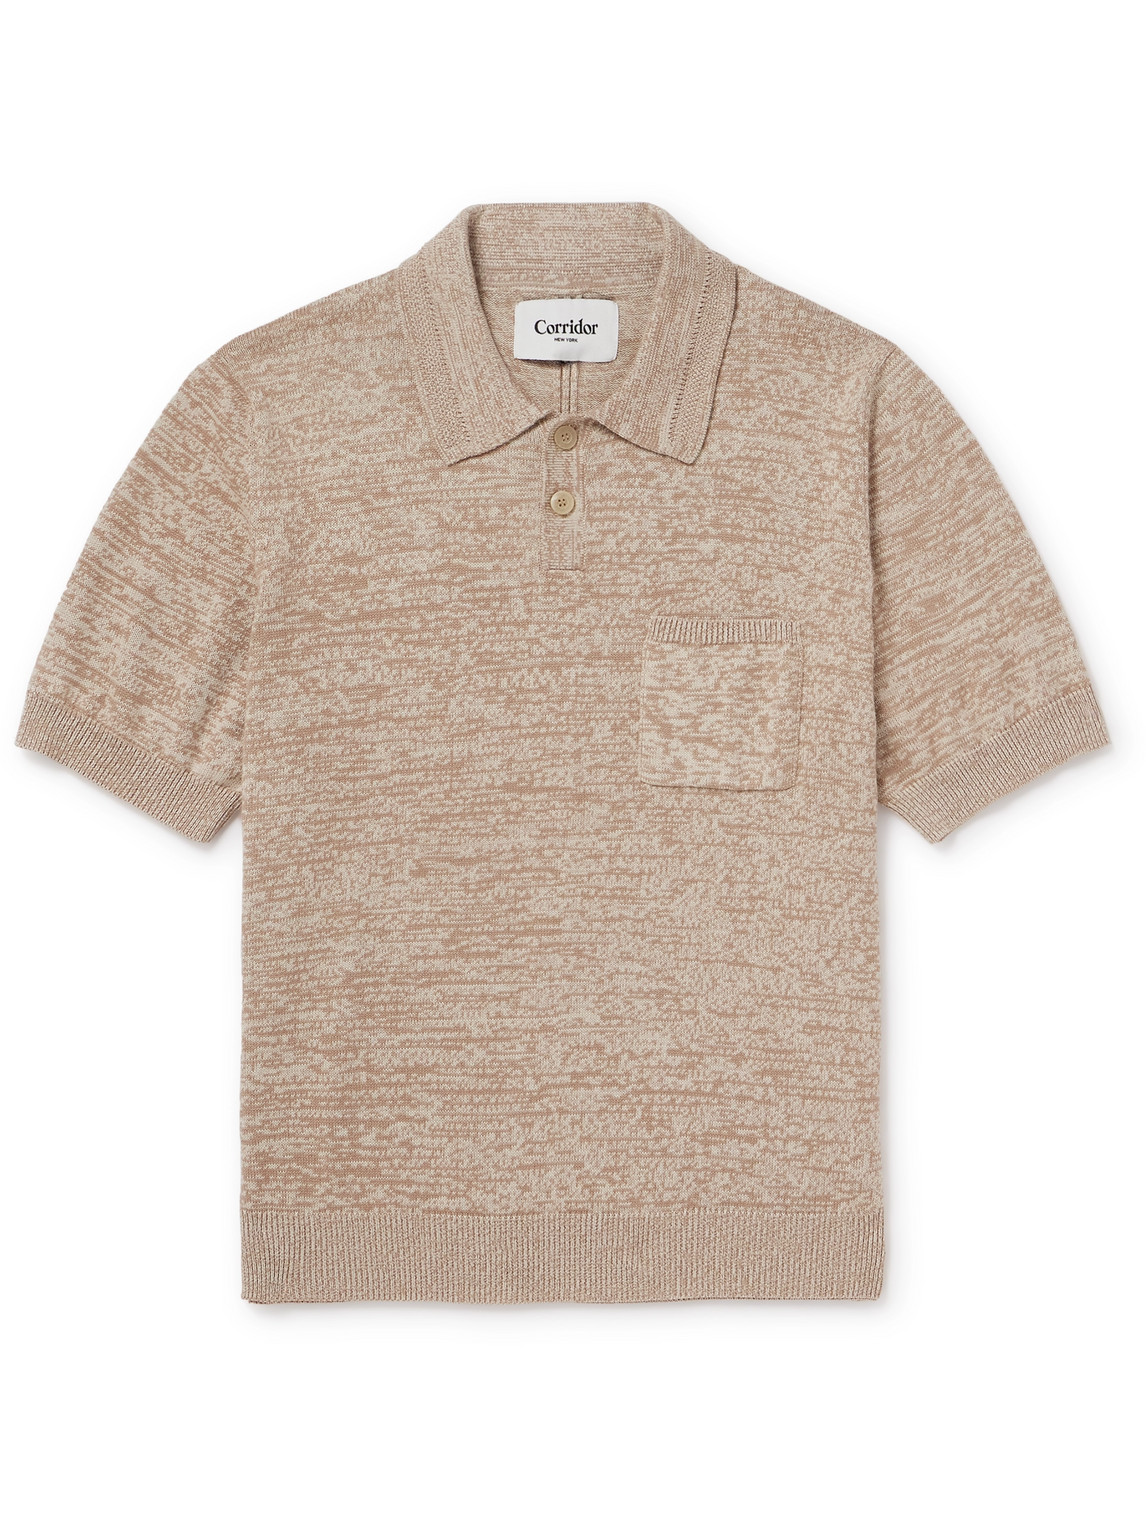 Corridor - Pima Cotton Polo Shirt - Men - Neutrals - XL von Corridor